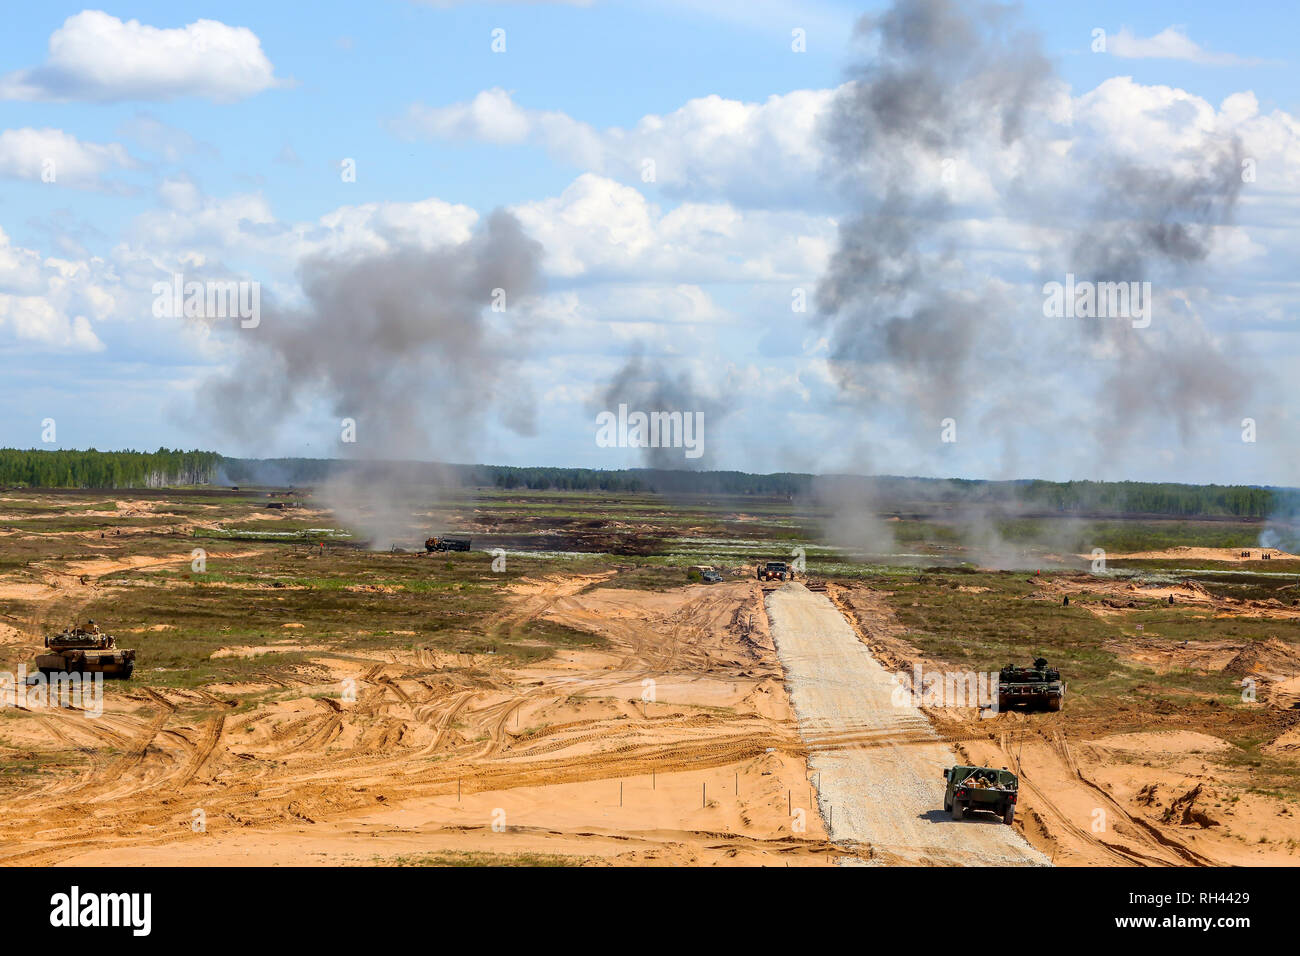 Esplosione e fumo. Militare Internazionale di Formazione "aber Strike 2017', Adazi, Lettonia, dal 3 al 15 giugno 2017. US Army Europe-led Internation annuale Foto Stock